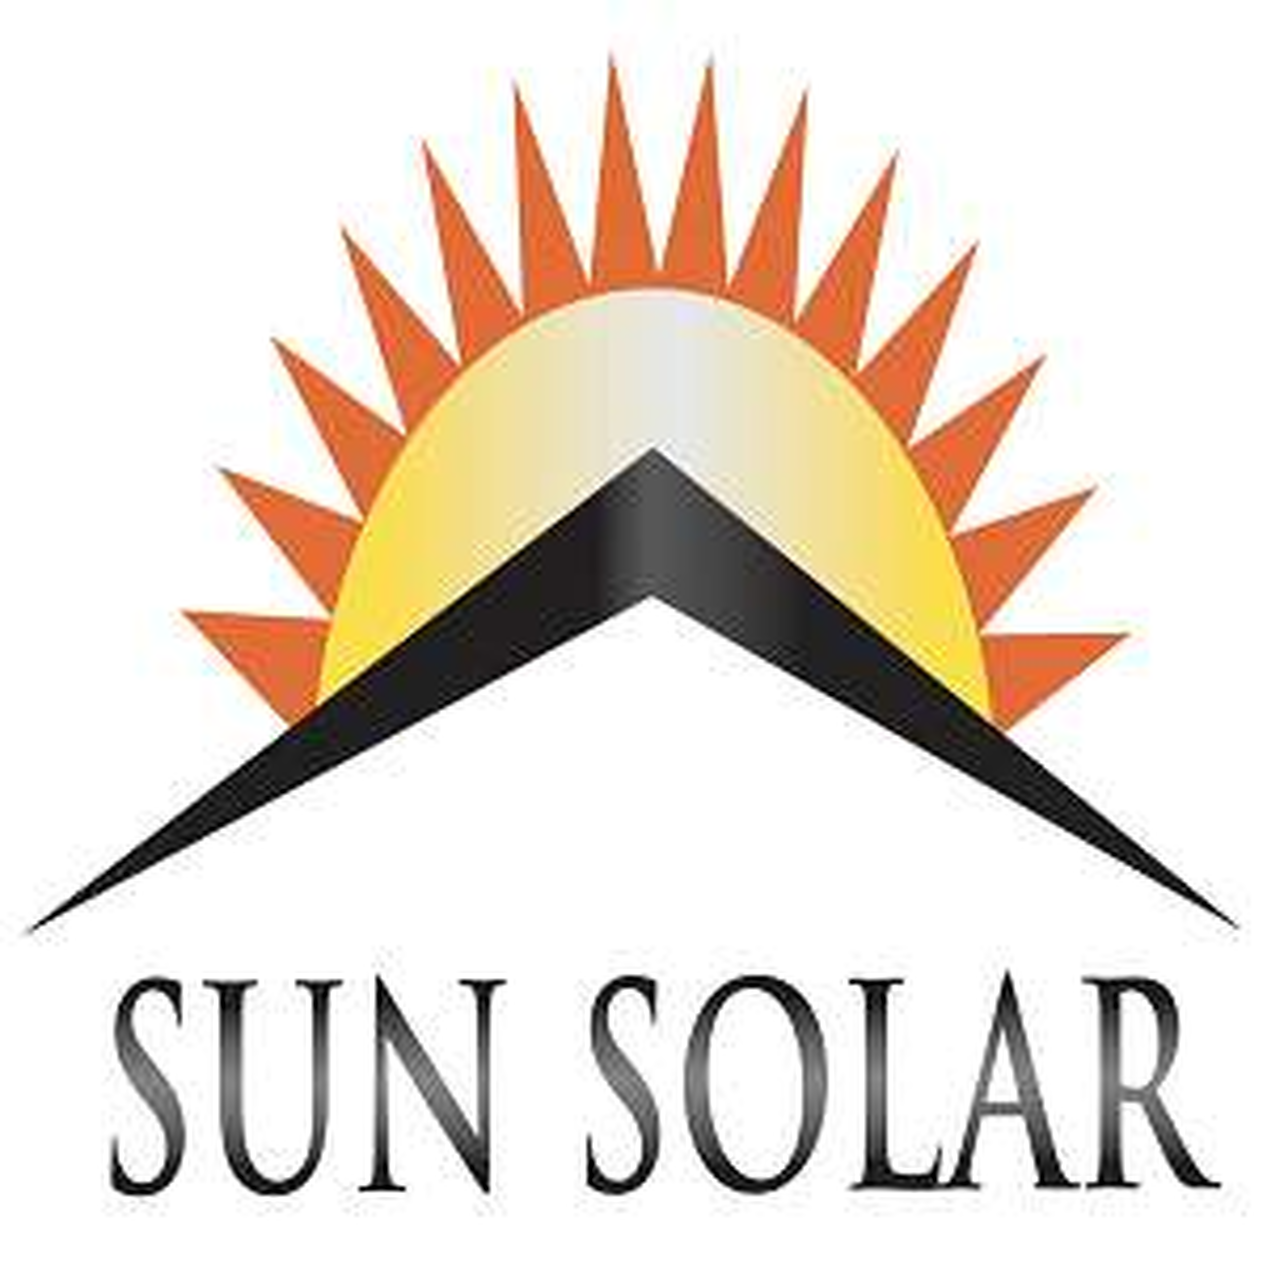 Sun Solar